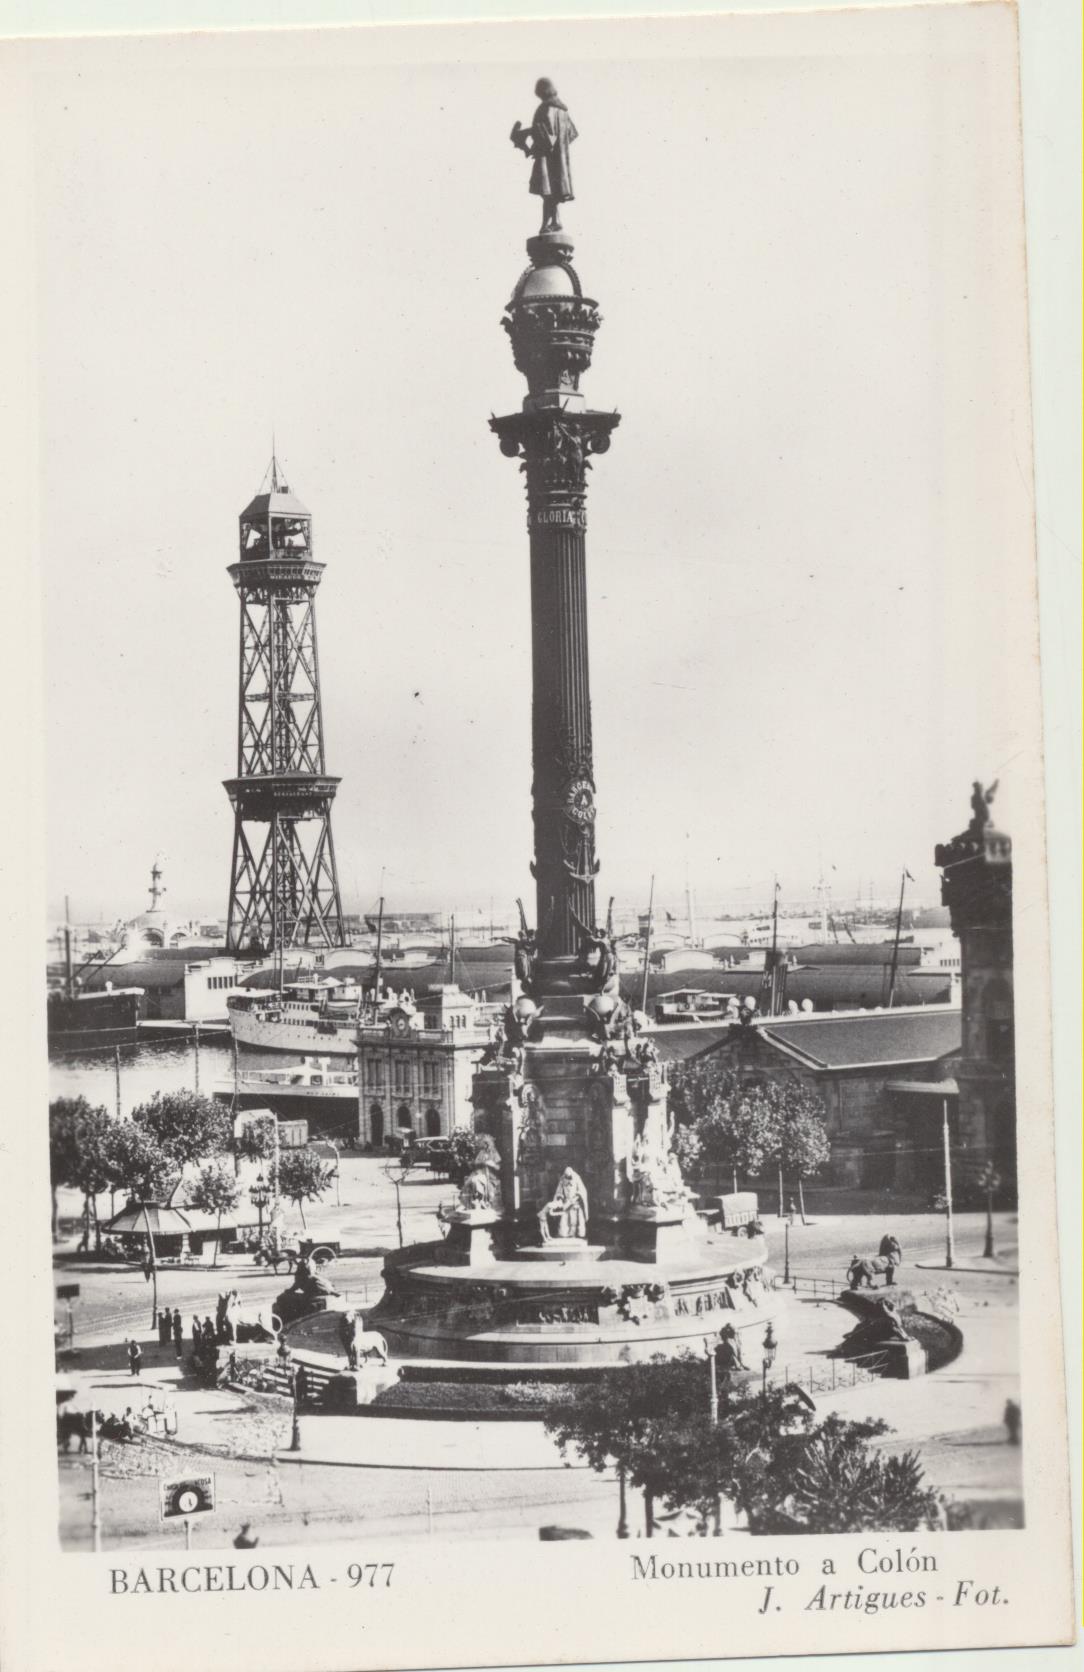 Barcelona. Monumento a Colón. J. Artigues Foto